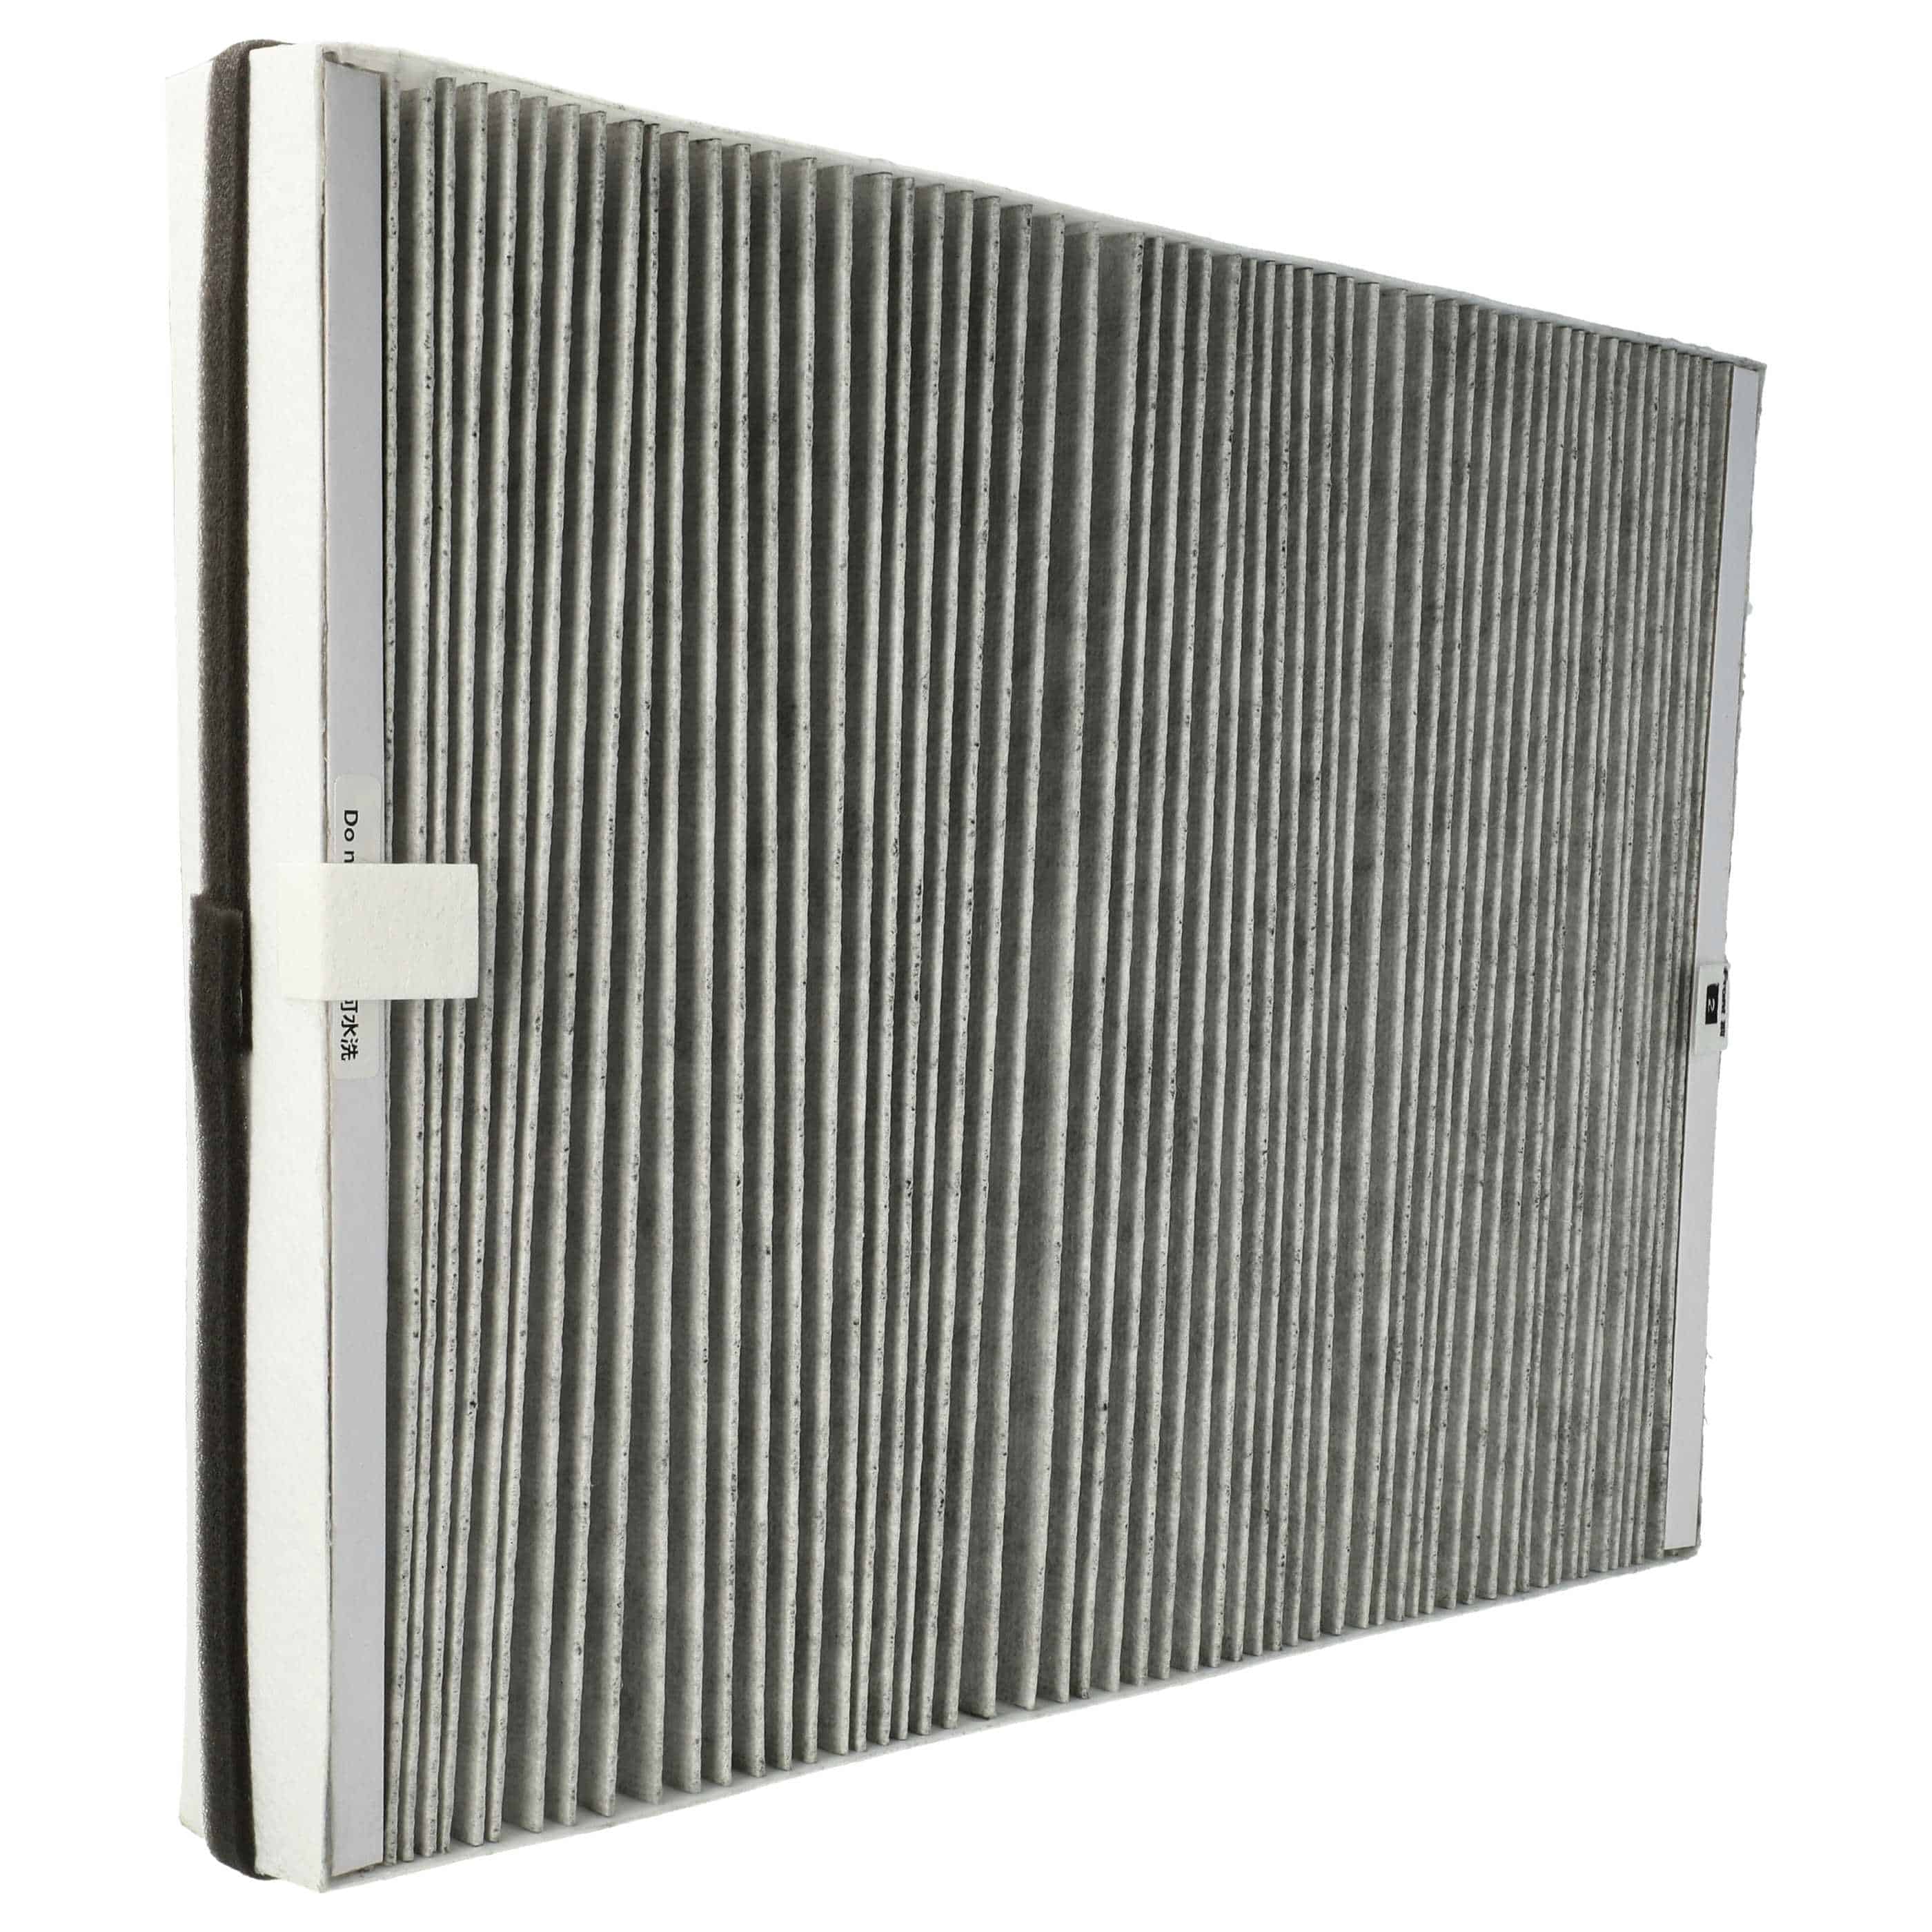 Filtr do oczyszczacza powietrza zam. Philips AC4147/10 - HEPA + węgiel aktywny